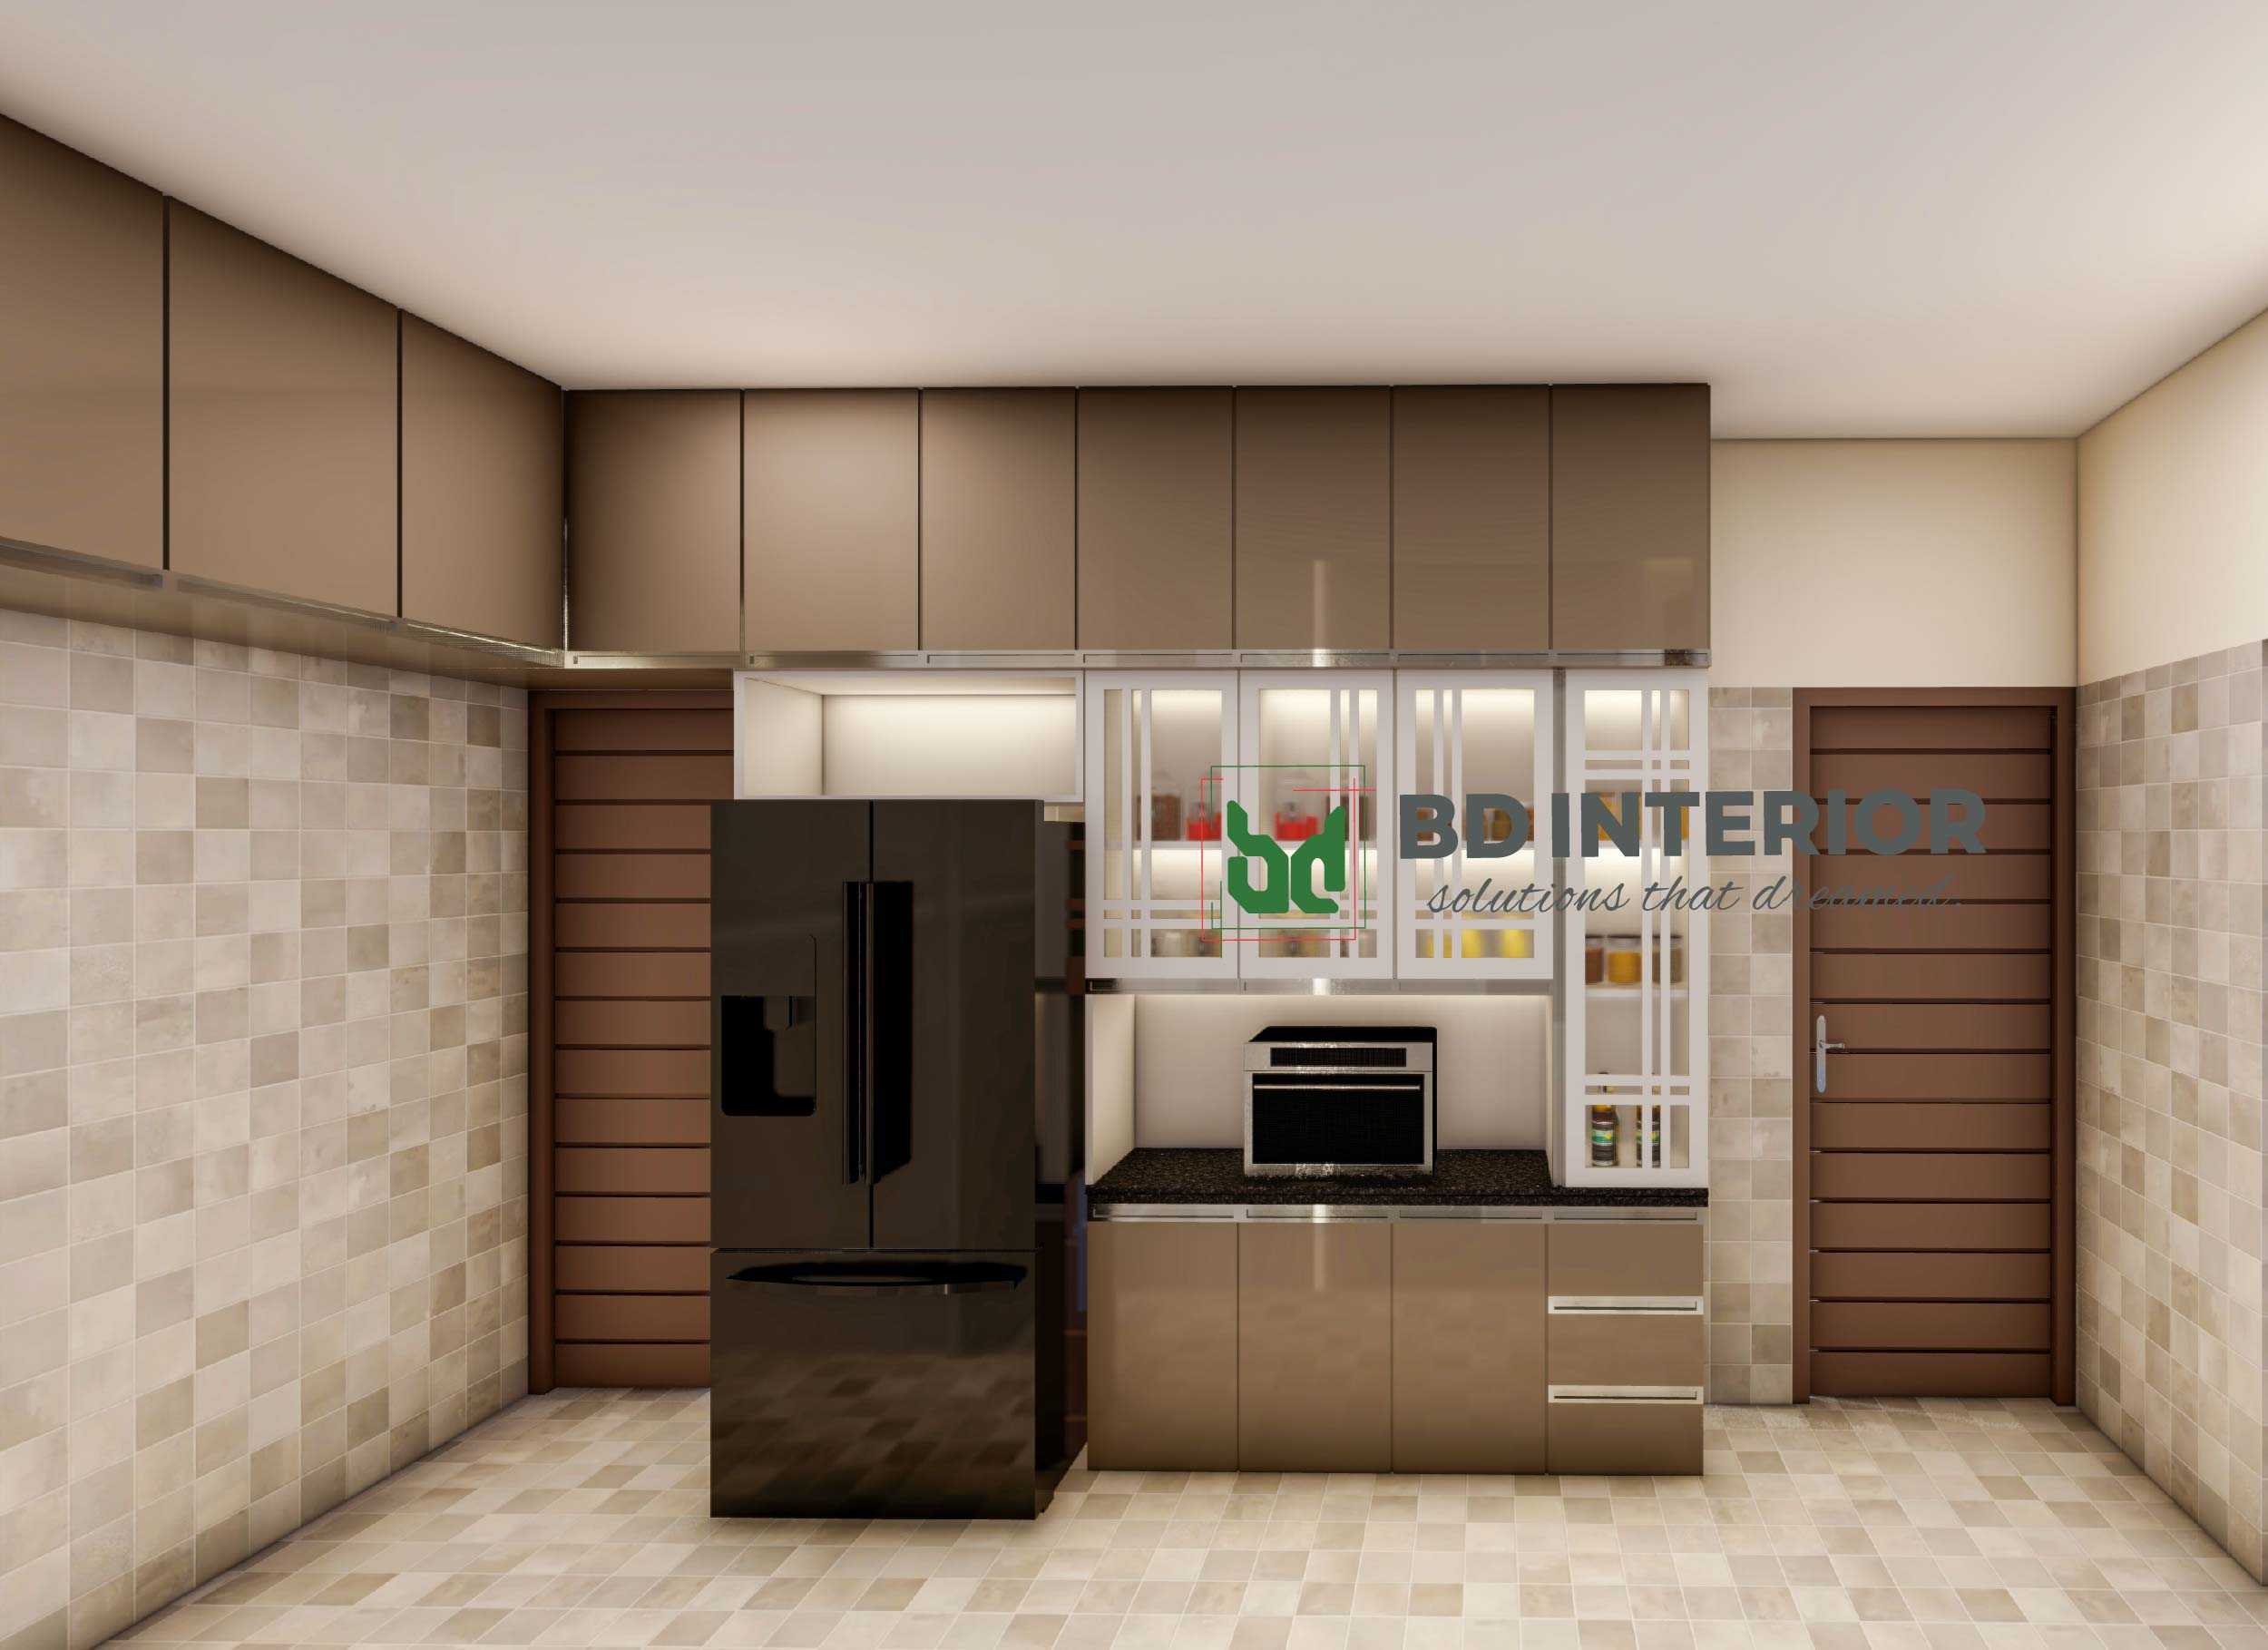 kitchen interior design bd